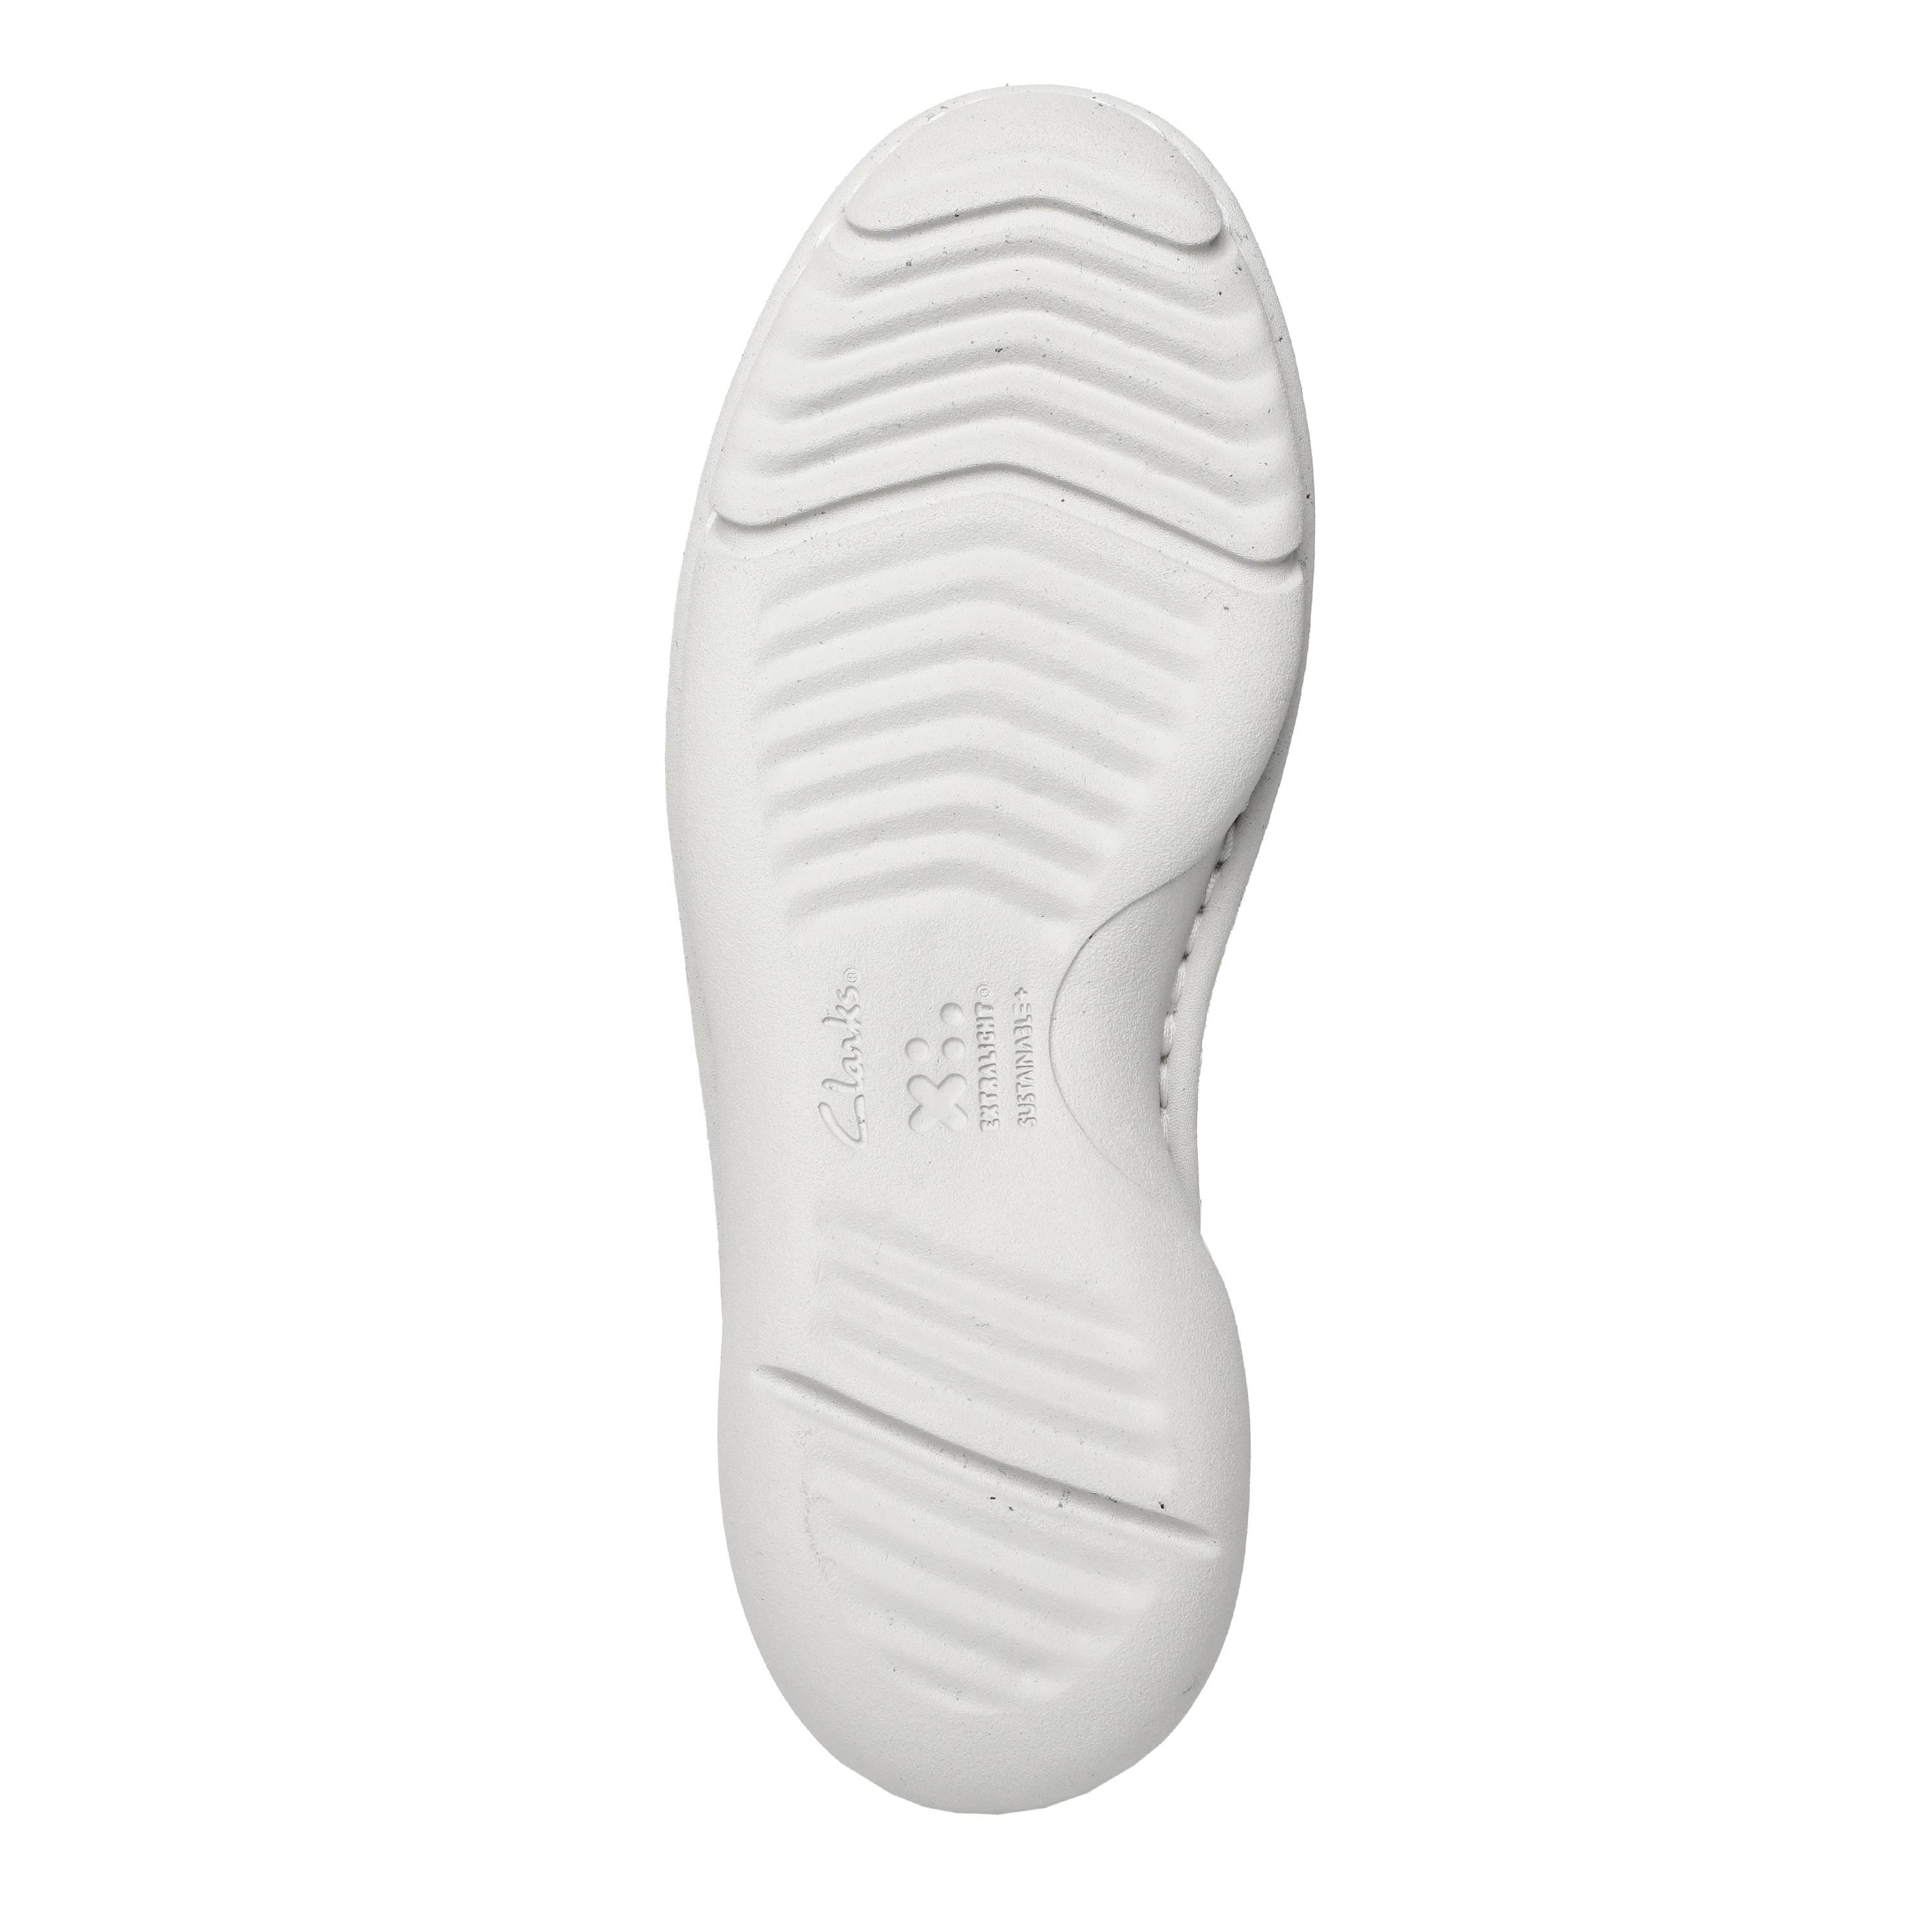 Женские кроссовки Clarks, белые, цвет белый, размер 36 - фото 3